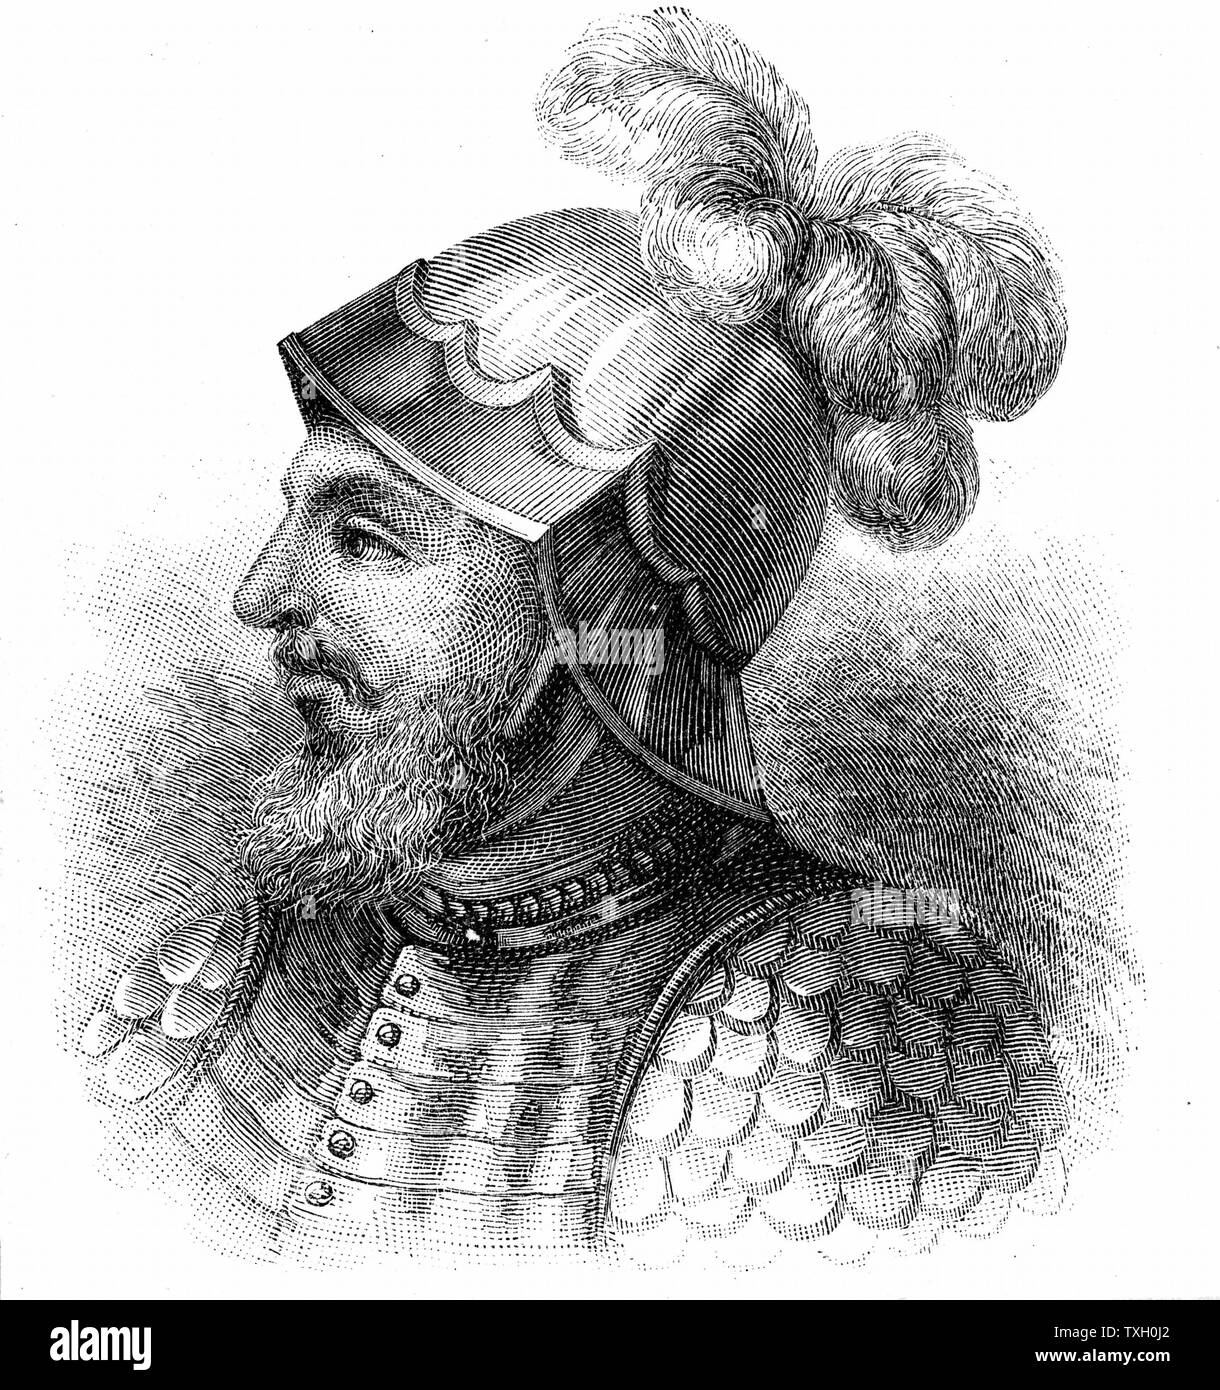 Vasco Núñez de Balboa (1475-1529) explorador español; fundada colonia en Darién. Primer europeo en avistar el Océano Pacífico. Grabado publicado a finales del siglo XIX. Foto de stock